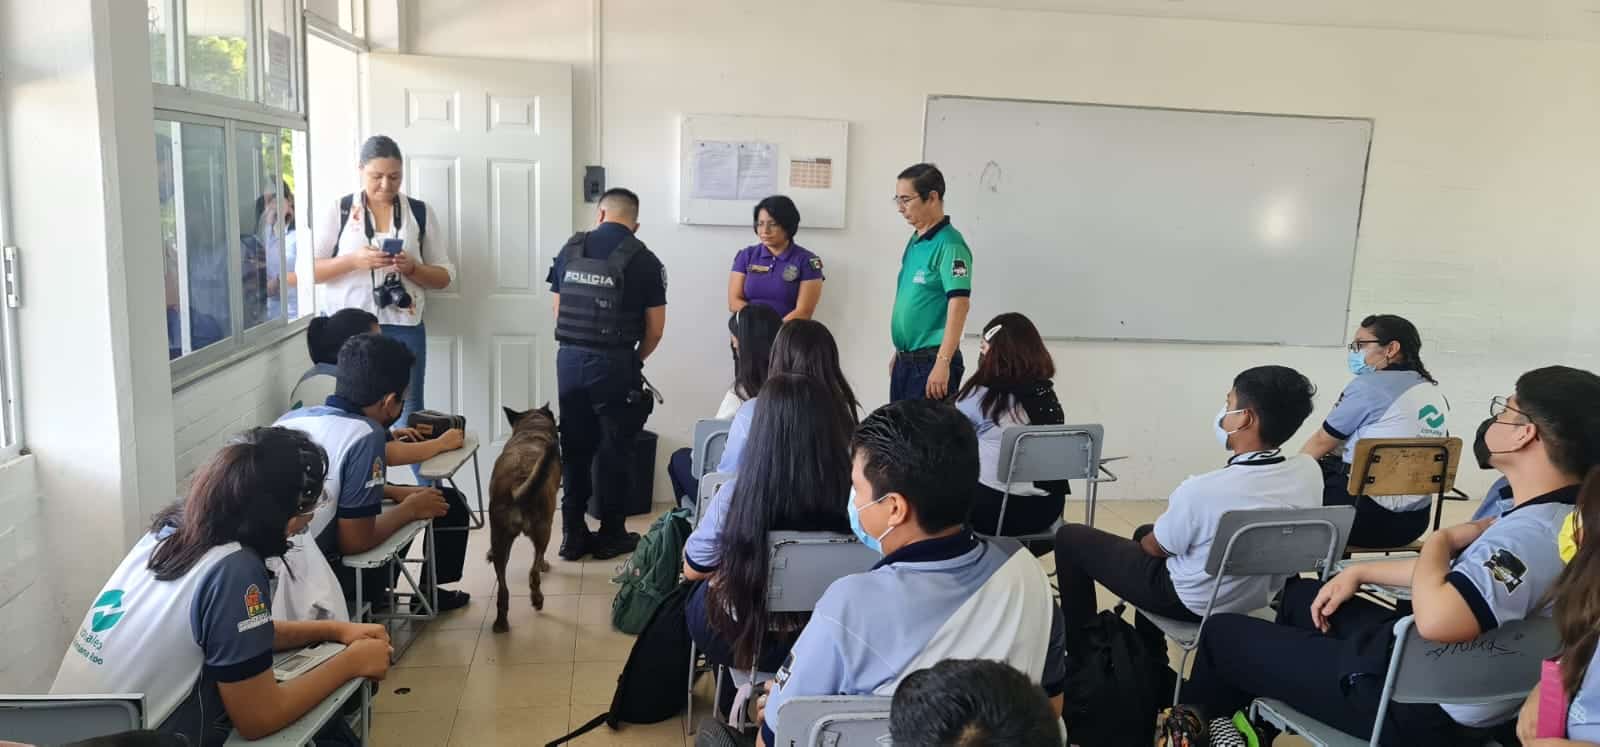 Implementa Policía Quintana Roo acciones para garantizar seguridad de estudiantes